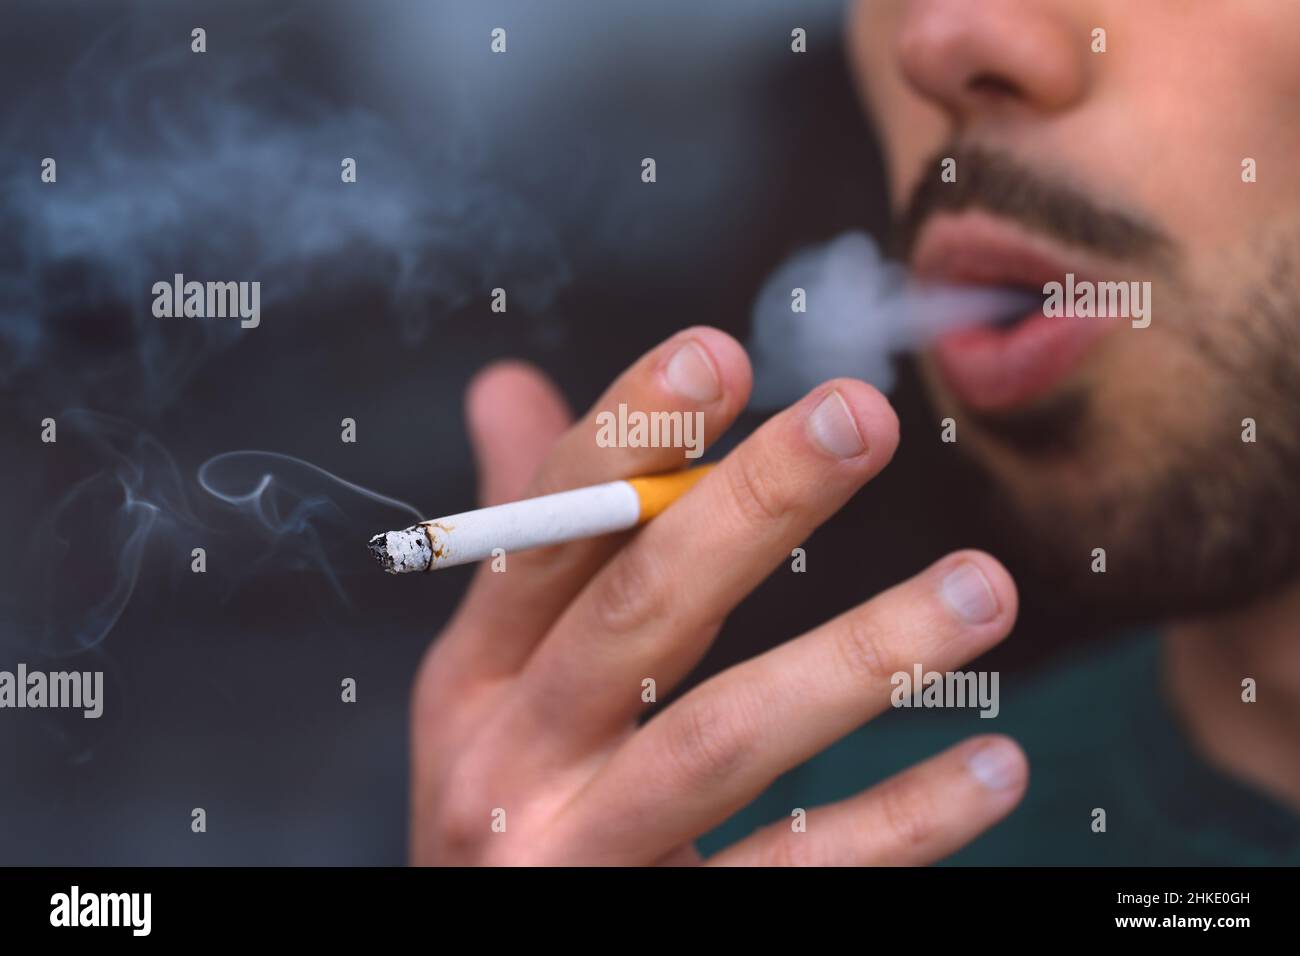 Nahaufnahme eines jungen Mannes, der Zigarette raucht. Rauchen sucht und schlechte Gewohnheit Konzept Stockfoto